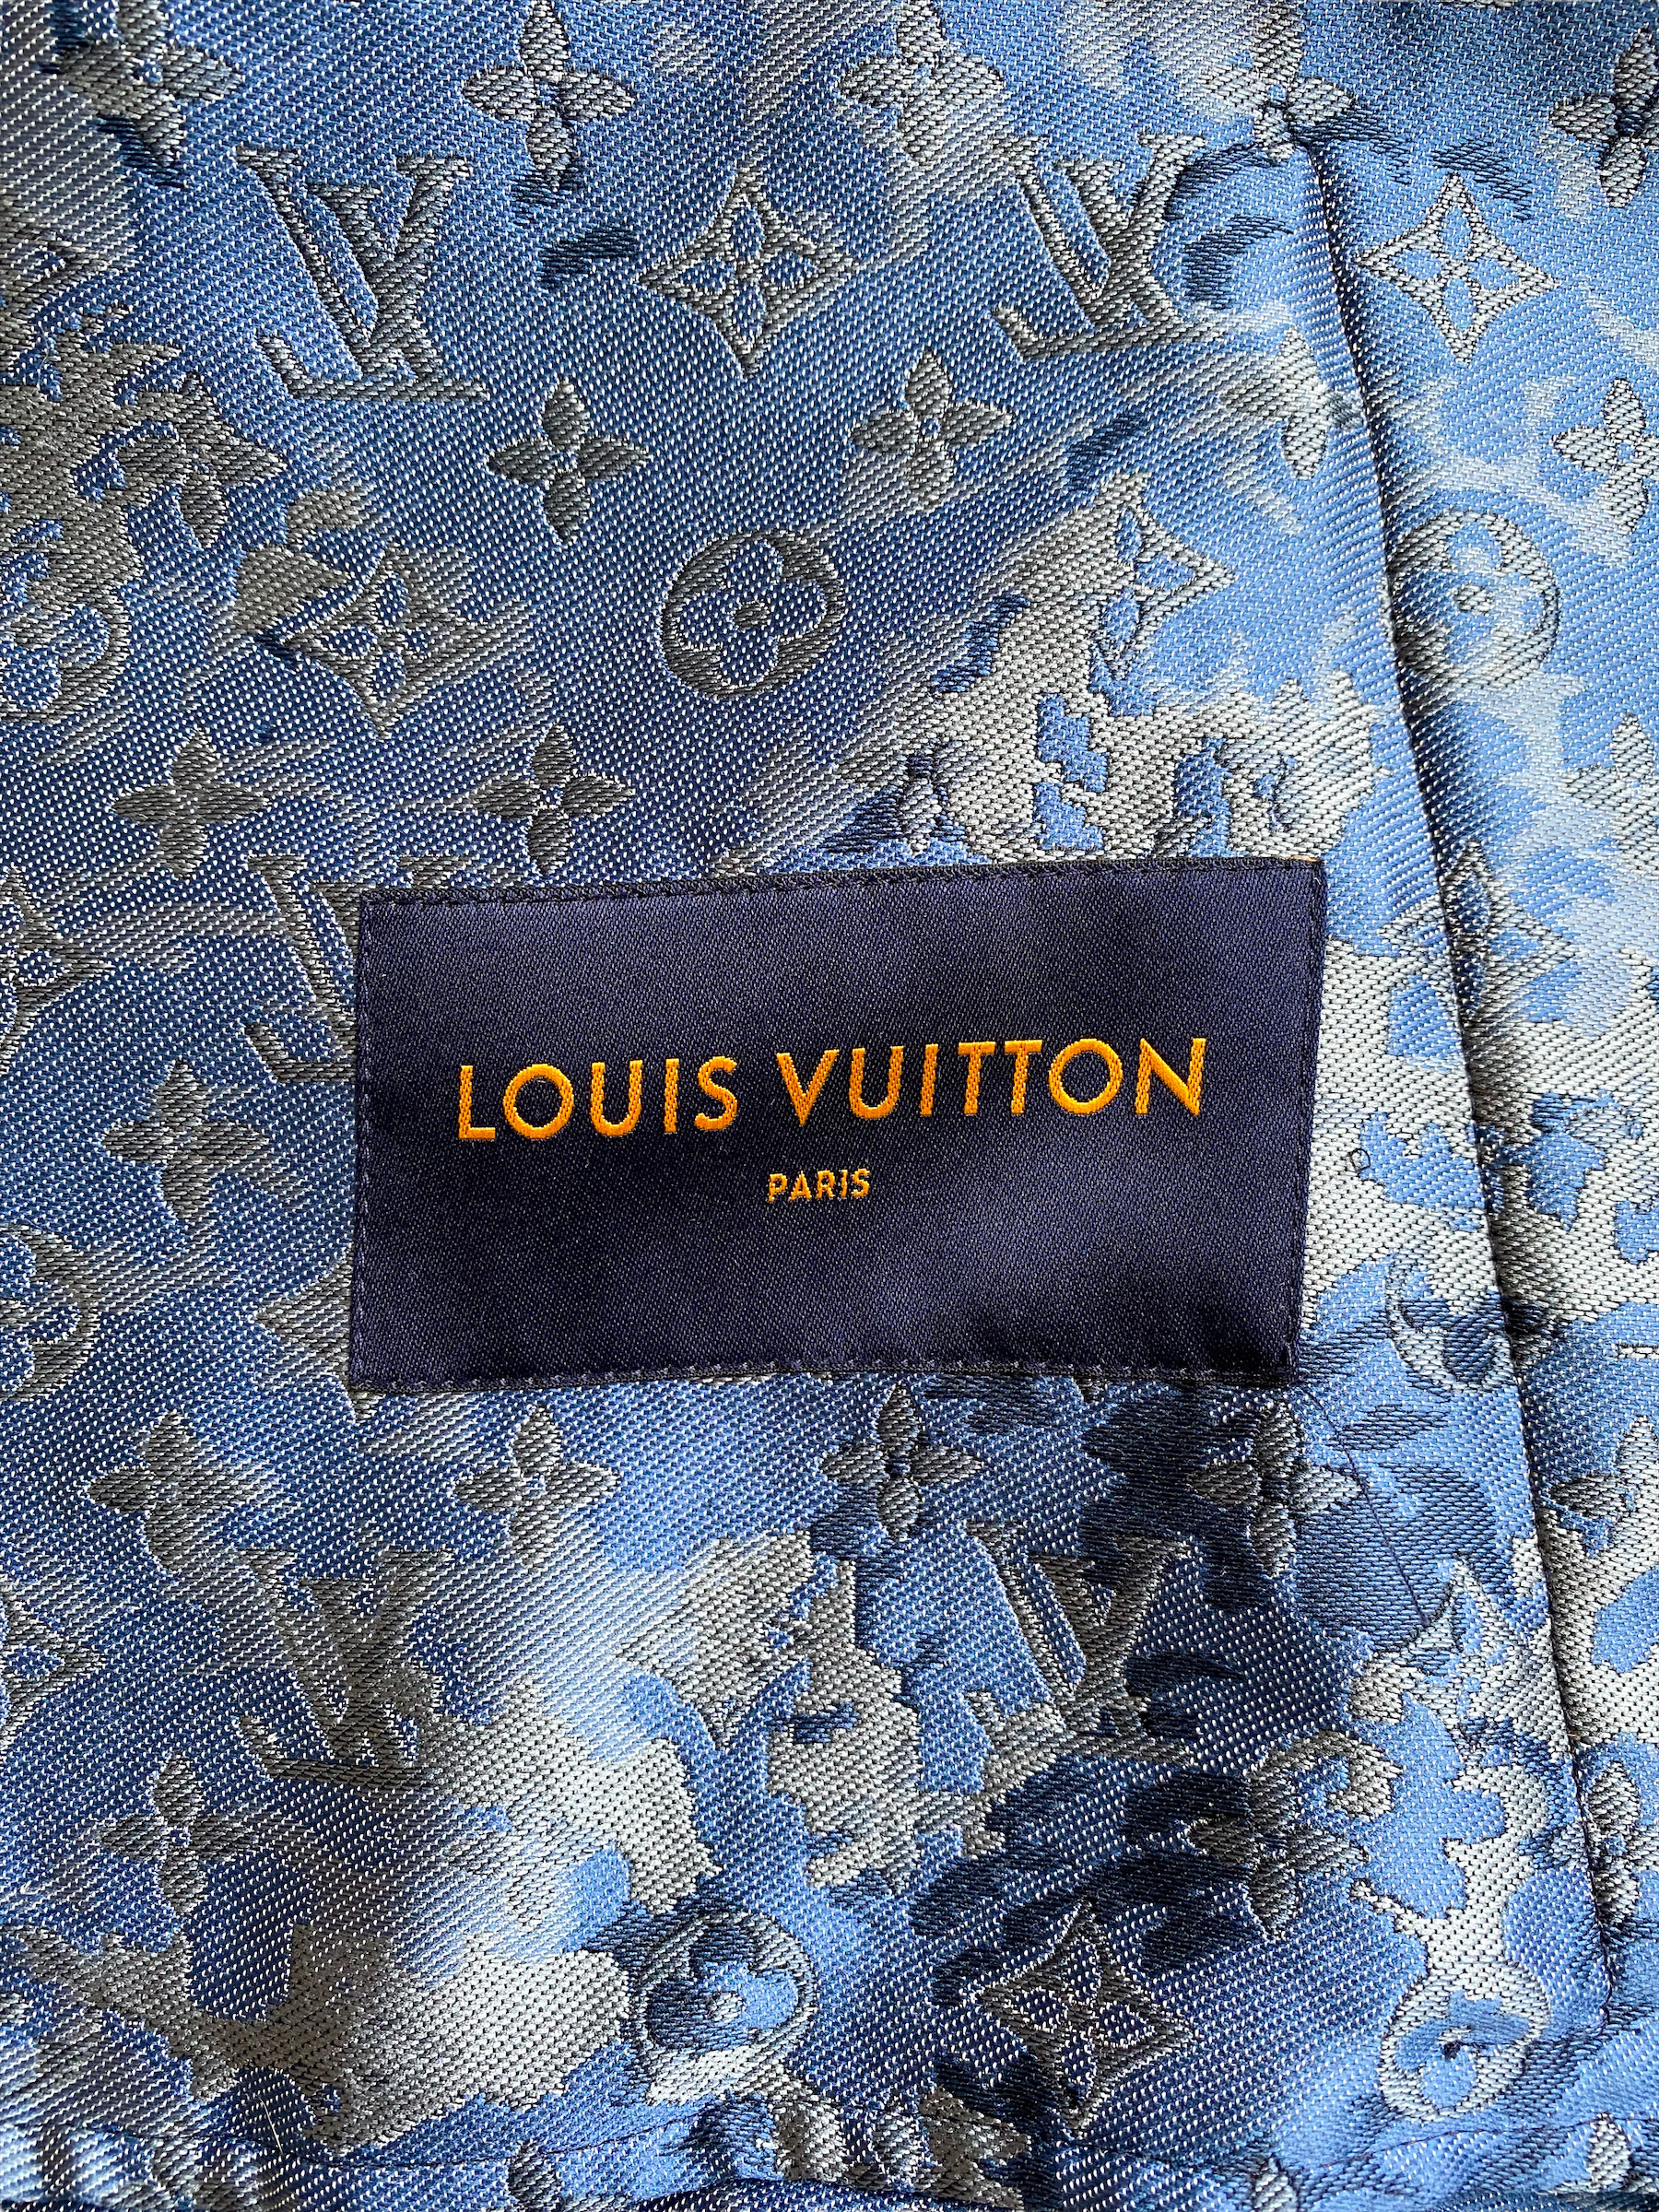 Louis Vuitton Navy Blue Monogram Print Denim Jacket L Louis Vuitton